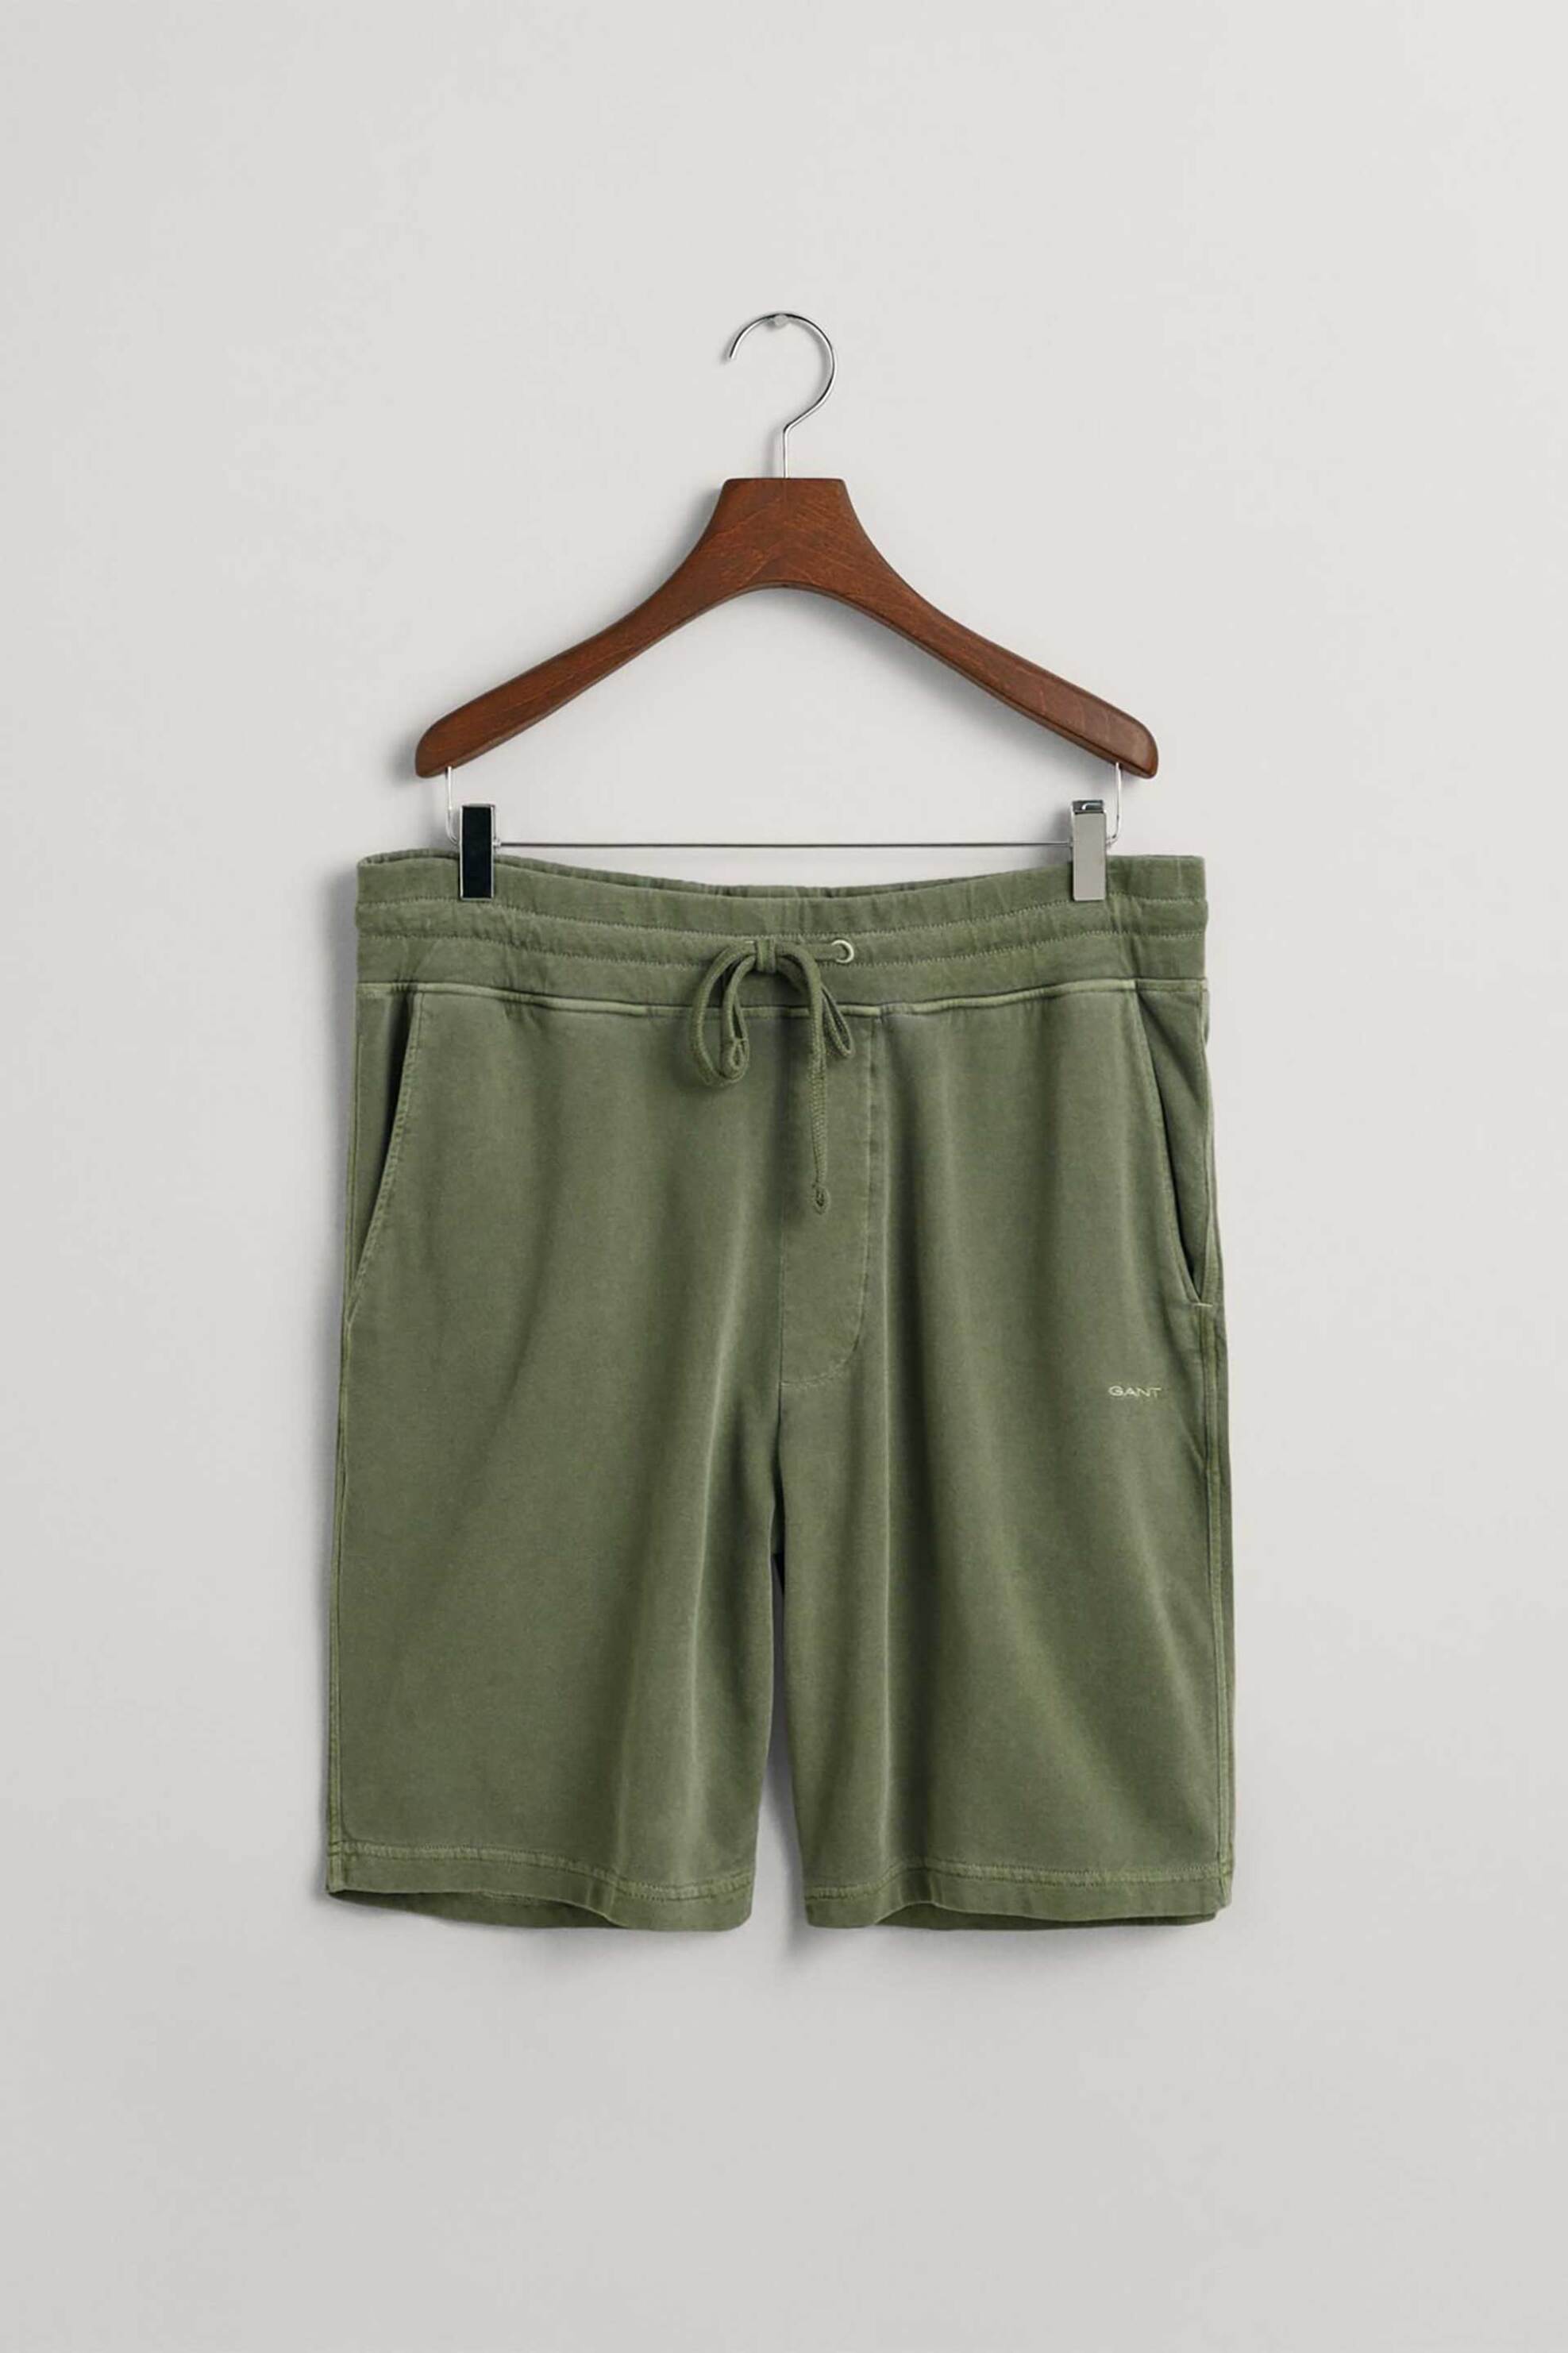 Ανδρική Μόδα > Ανδρικά Ρούχα > Ανδρικές Βερμούδες Gant ανδρική βερμούδα με ελαστική μέση Regular Fit - 2013021 Πράσινο